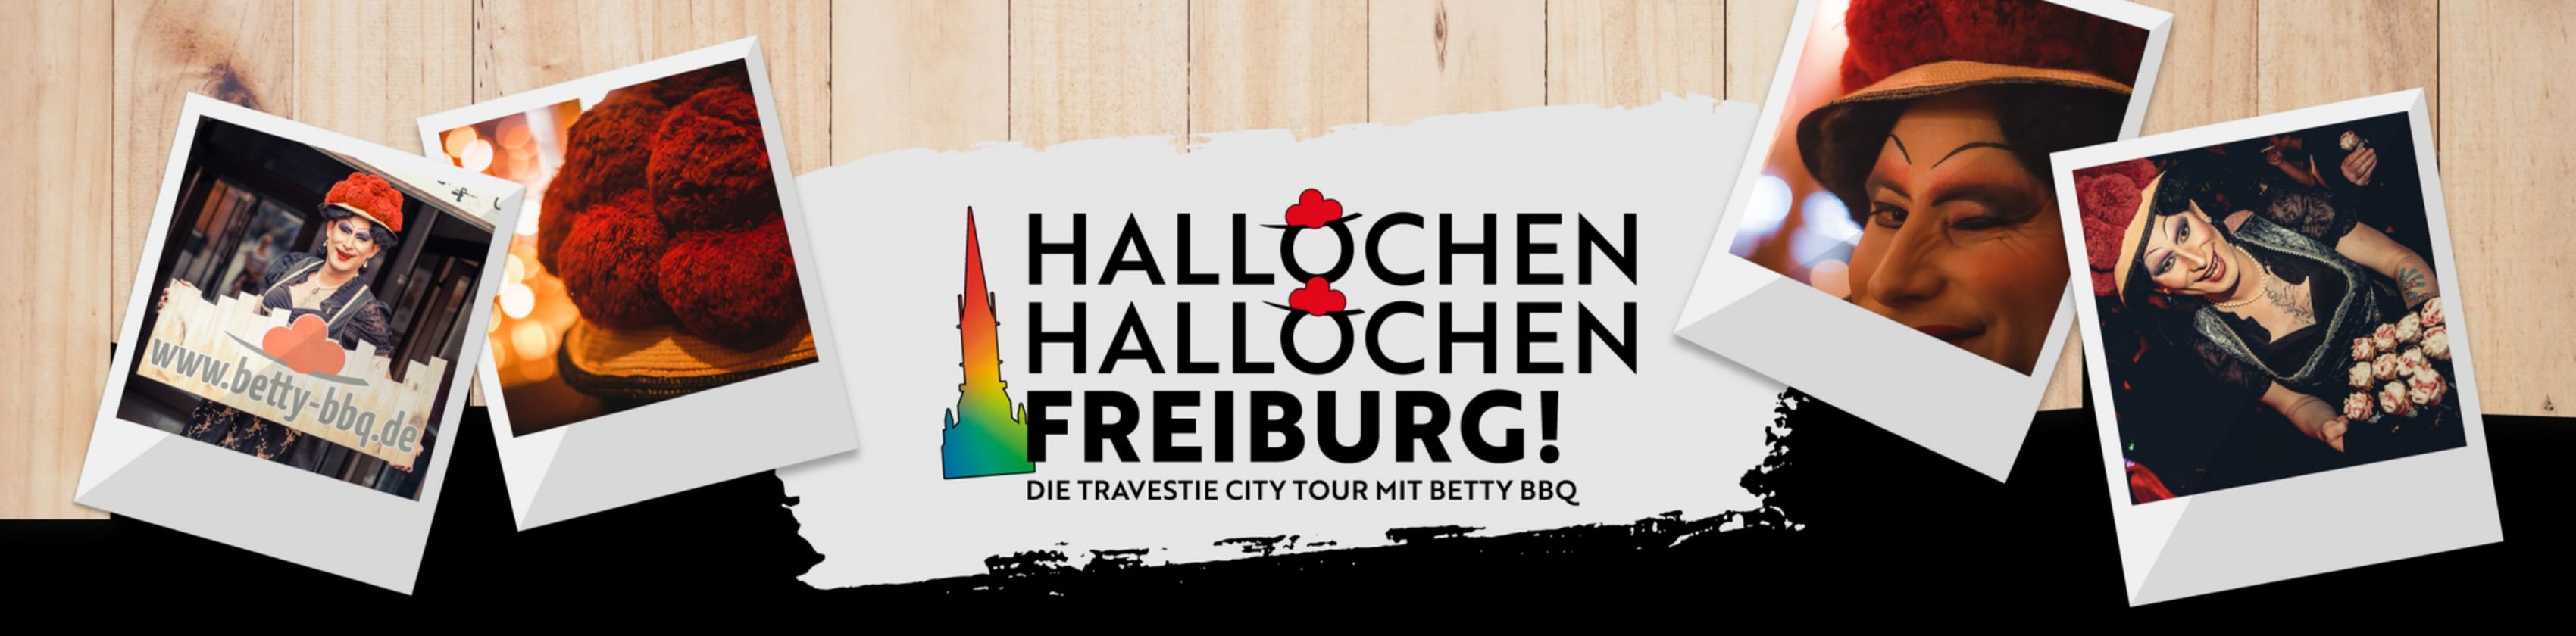 Ciao, ciao Friburgo! - Il tour della città delle parodie con Betty BBQ